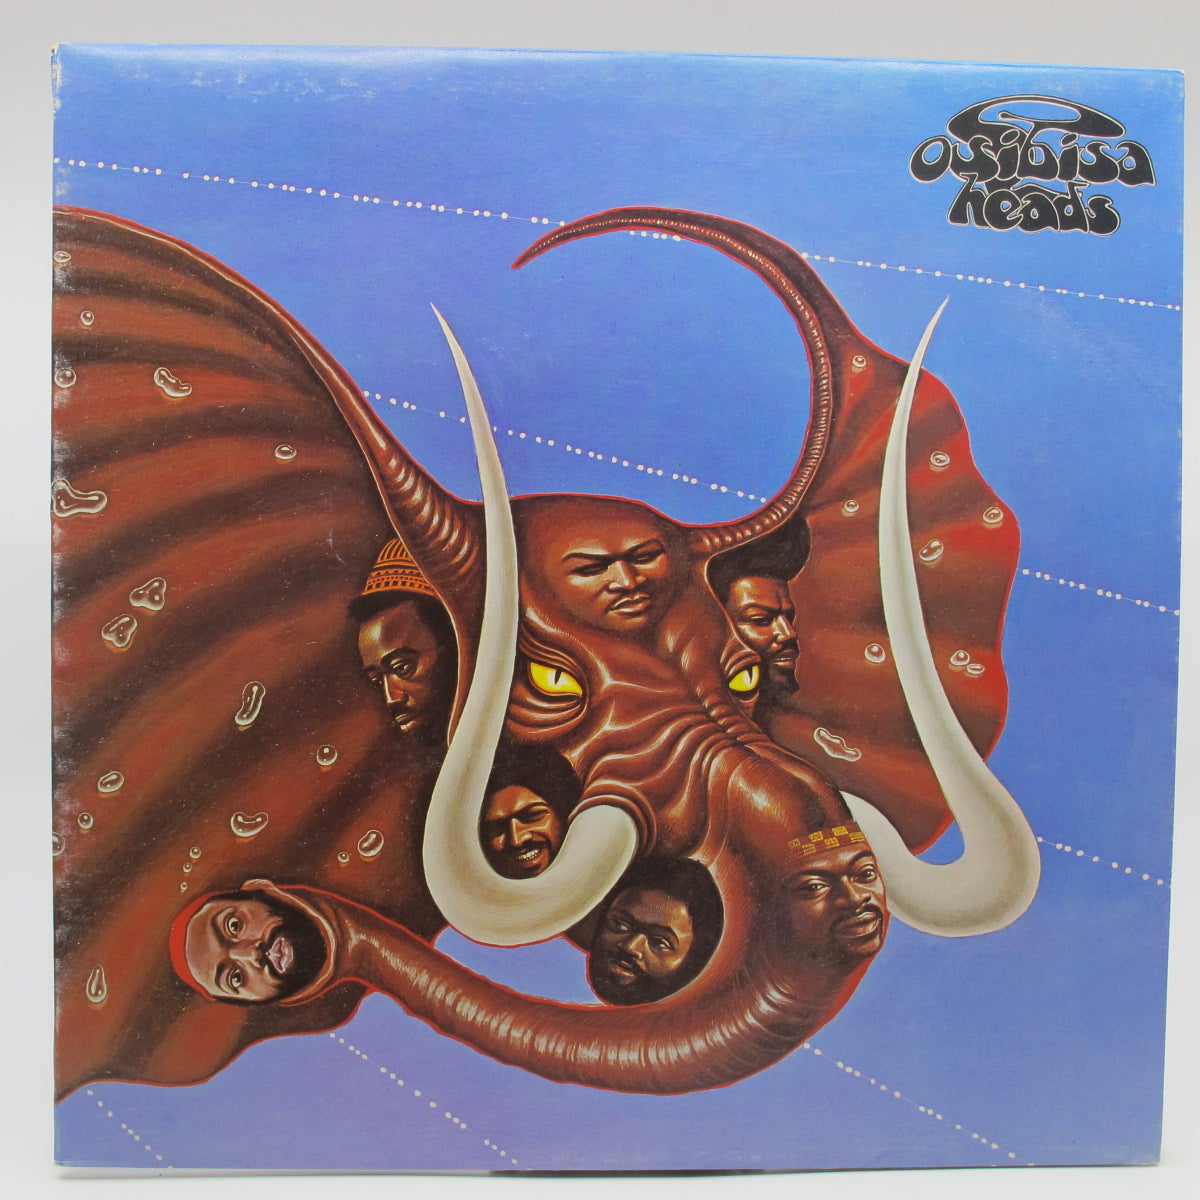 Osibisa - Heads (Notuð plata VG+)